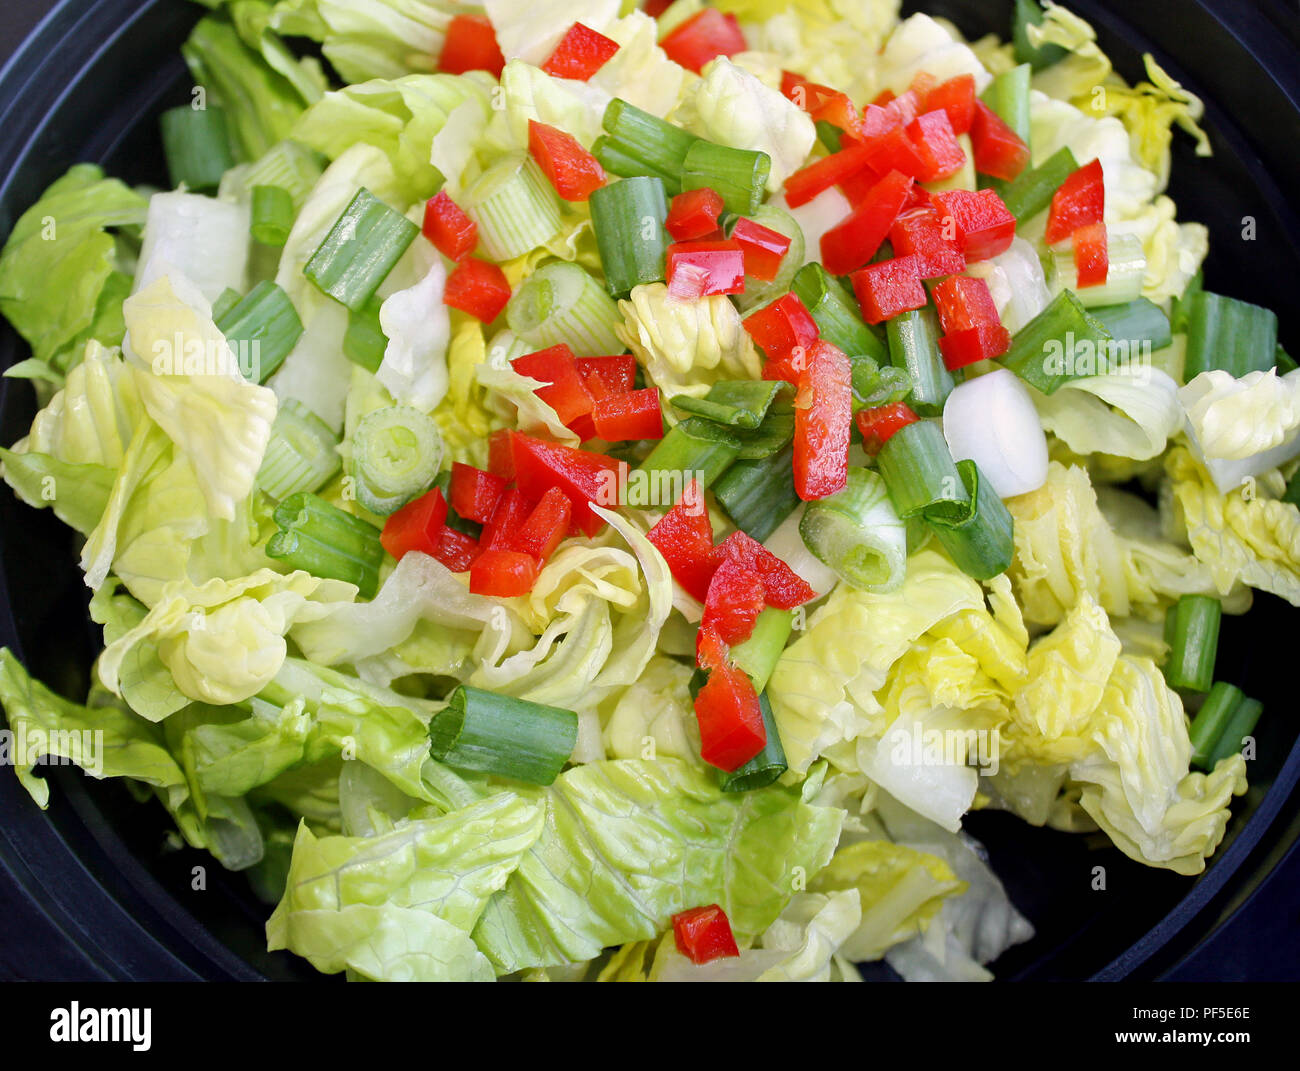 Frischen Gartensalat mit gewürfelten Paprika, grüne Zwiebeln und gehackten Römersalat Stockfoto